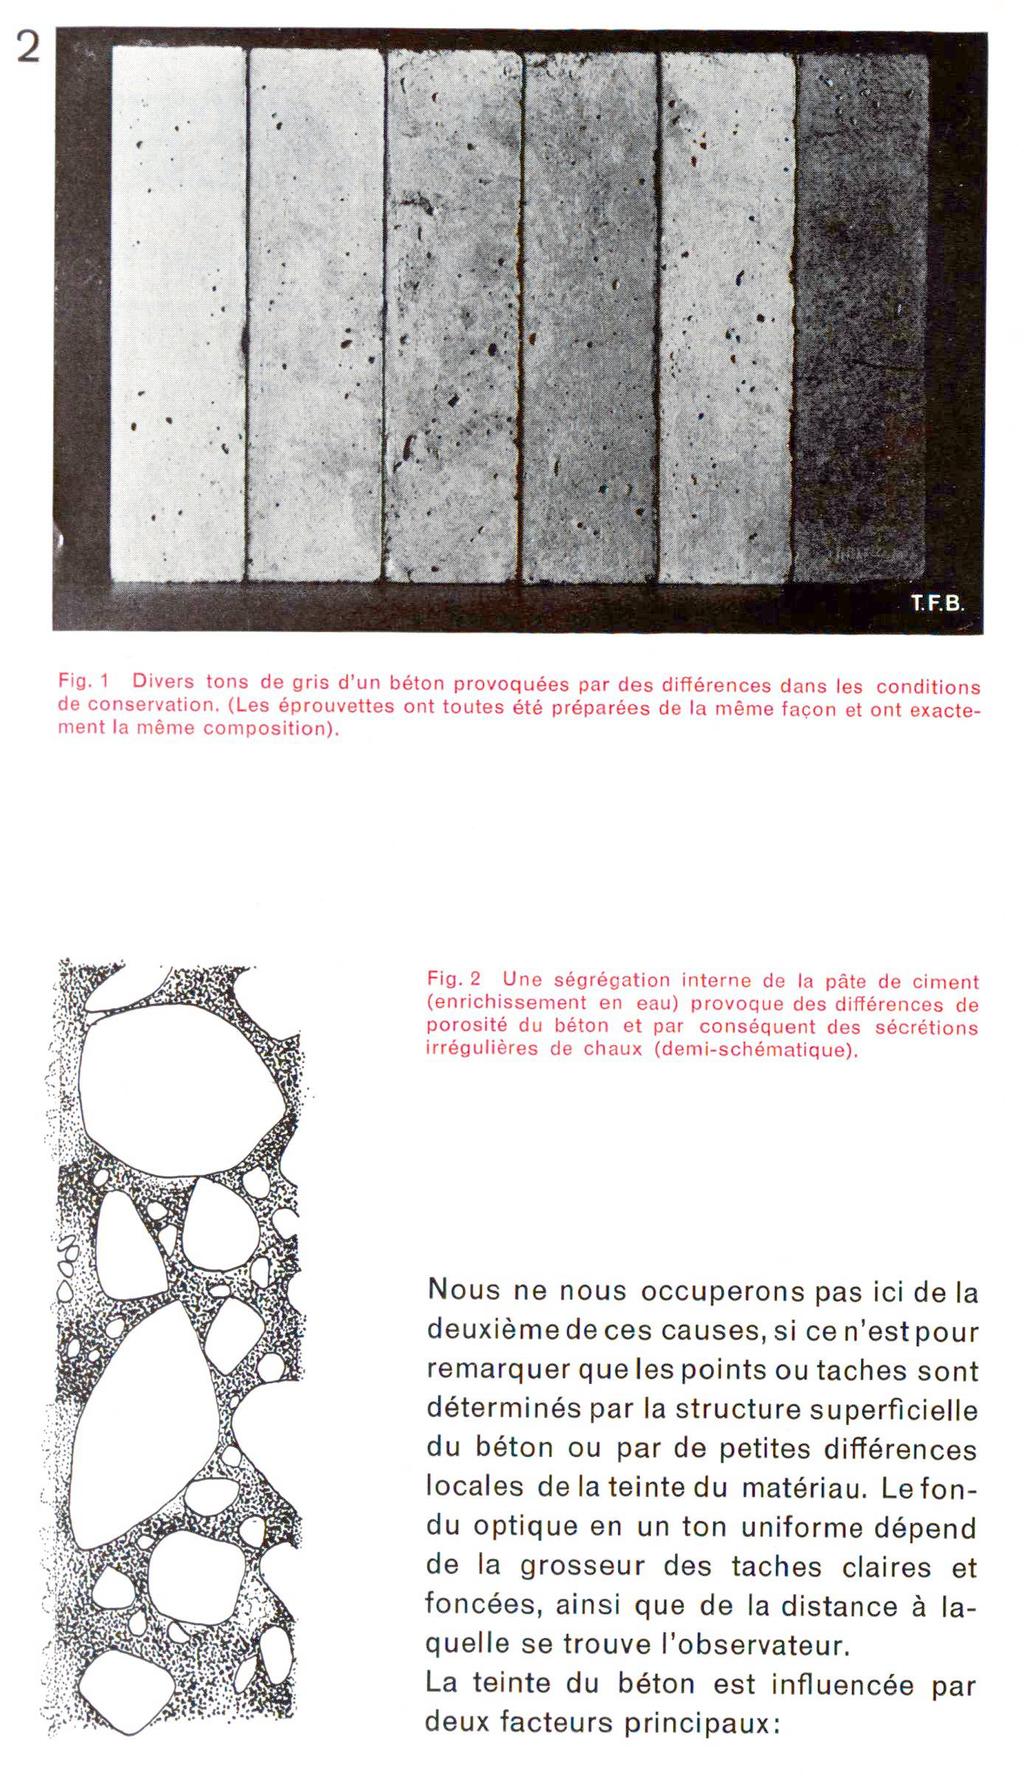 Fig. 1 Divers tons de gris d'un béton provoquées par des différences dans les conditions de conservation.